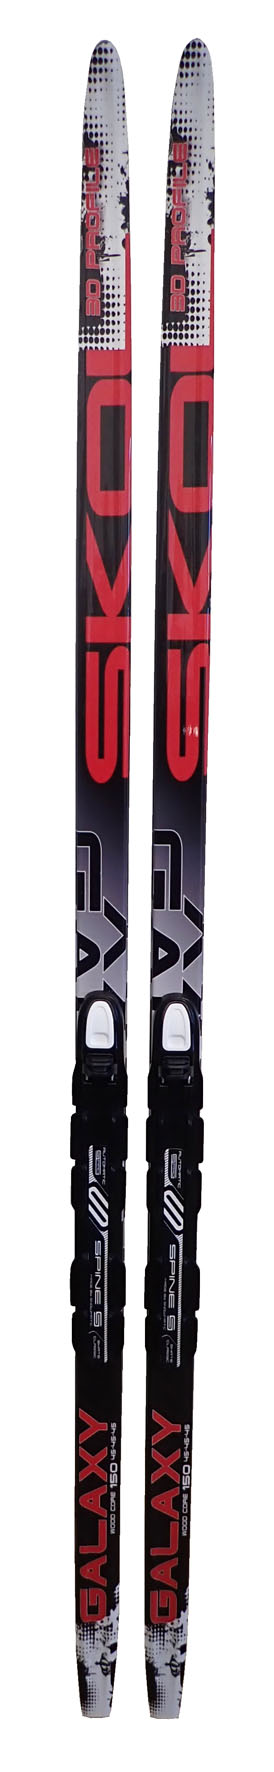 LSR-200 Běžecké lyže s vázáním NNN